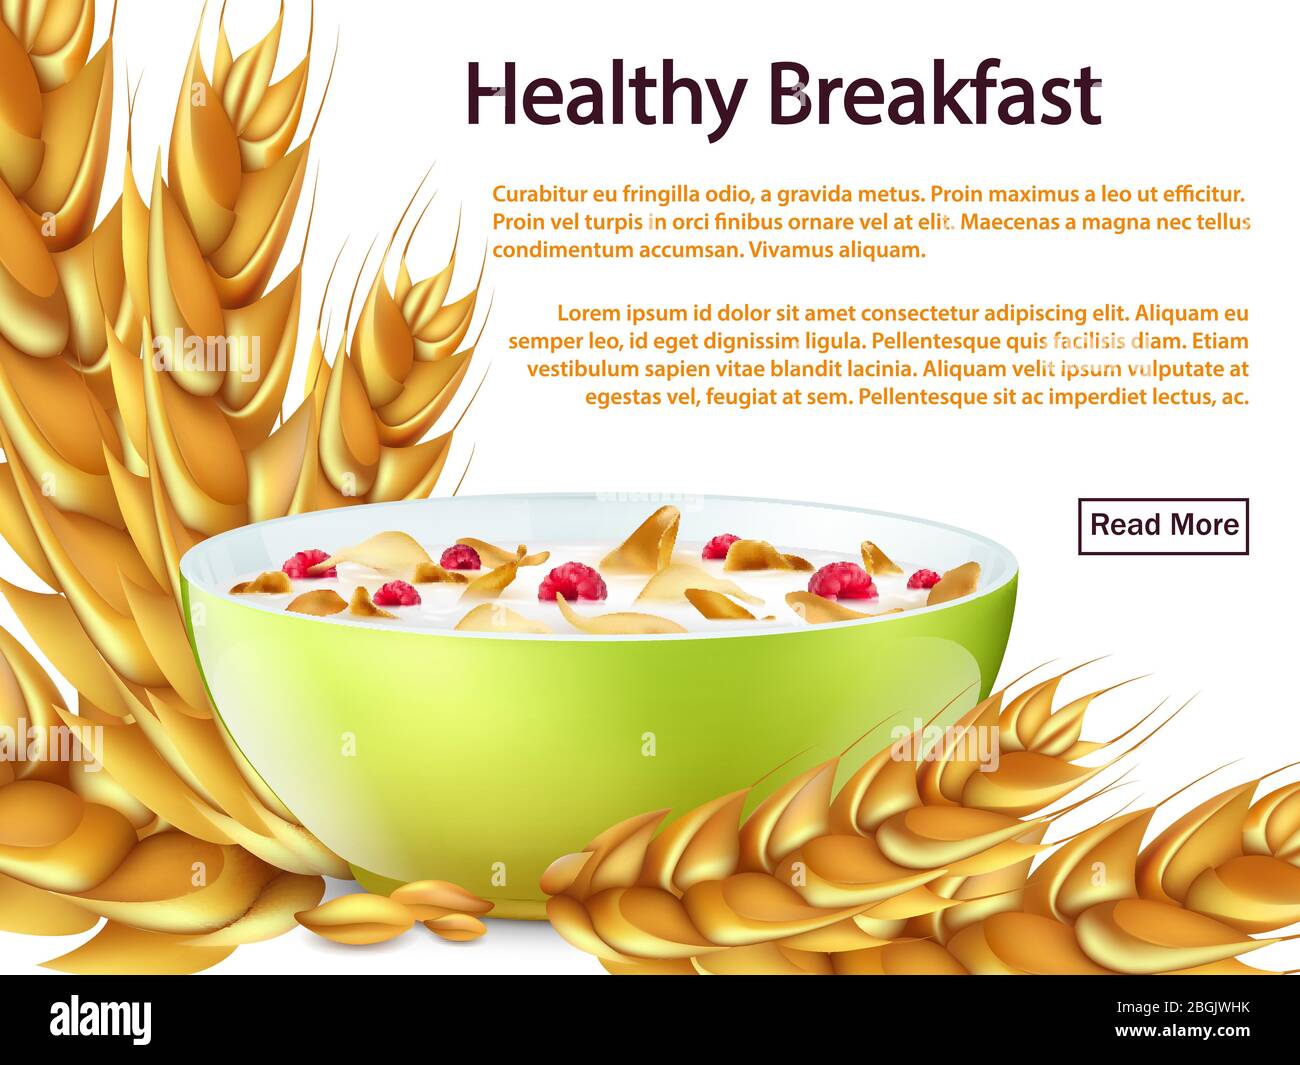 Gesundes Frühstück Banner oder Hintergrund oder Web-Seite Vektor-Konzept mit realistischen Objekten - Schüssel, Getreide, Cornflakes Illustration Stock Vektor